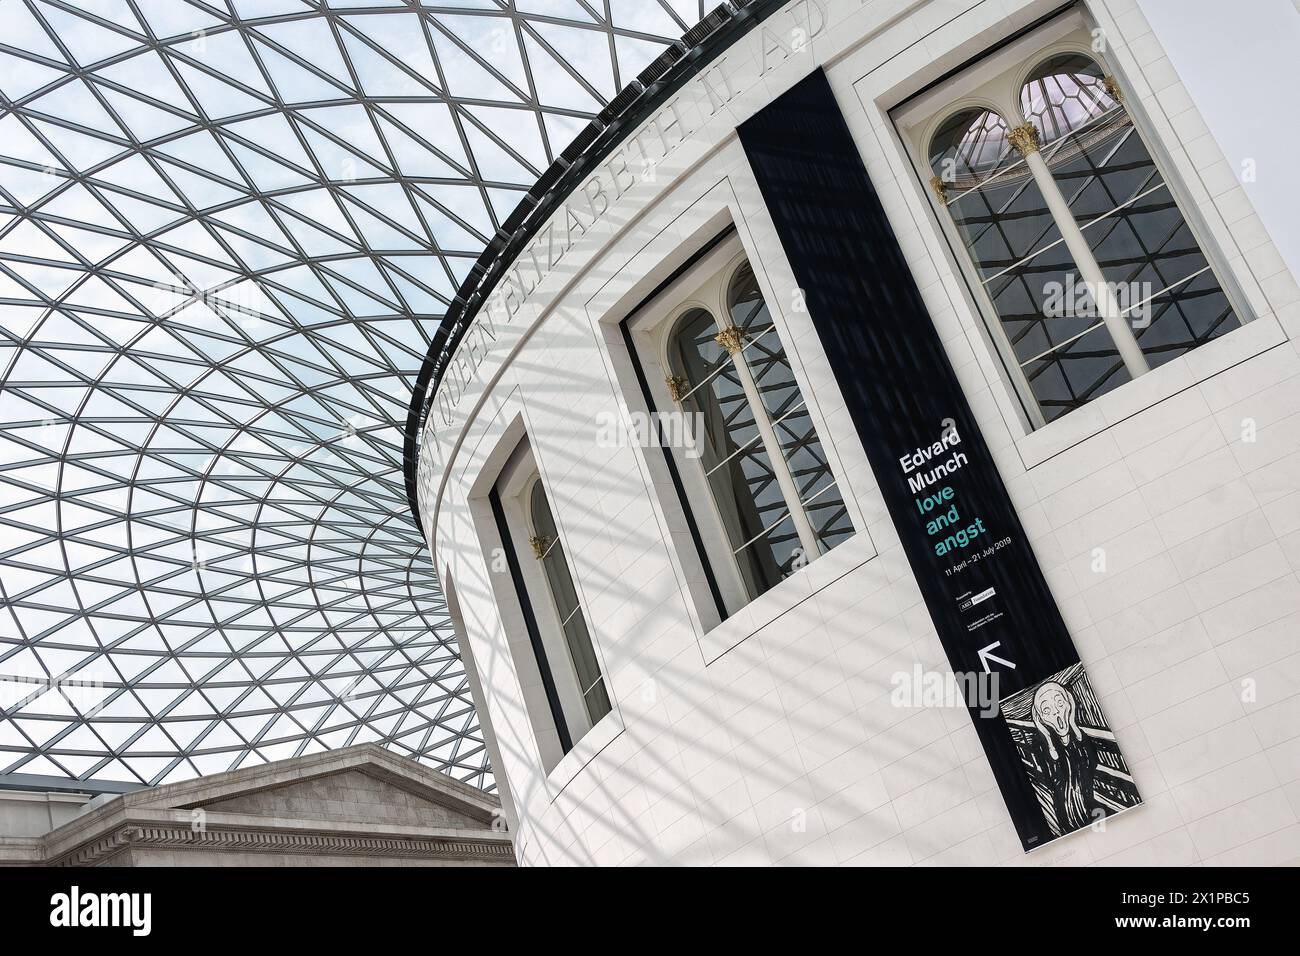 Londres, Royaume-Uni - 10 mai 2019 - exposition Edvard Munch au British Museum Banque D'Images